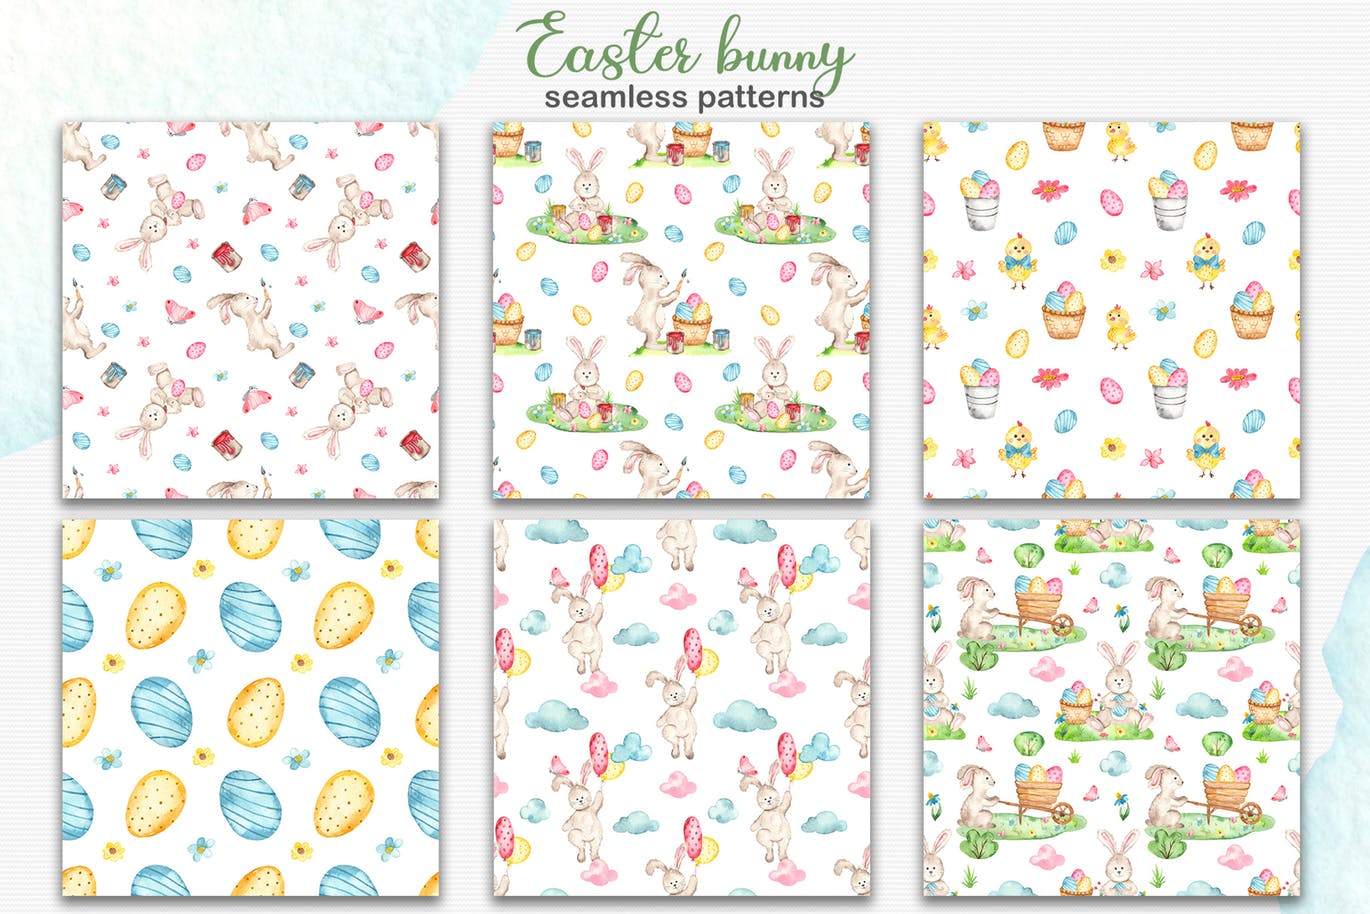 复活节兔子水彩手绘素材套装 Watercolor Easter Bunny collection插图6